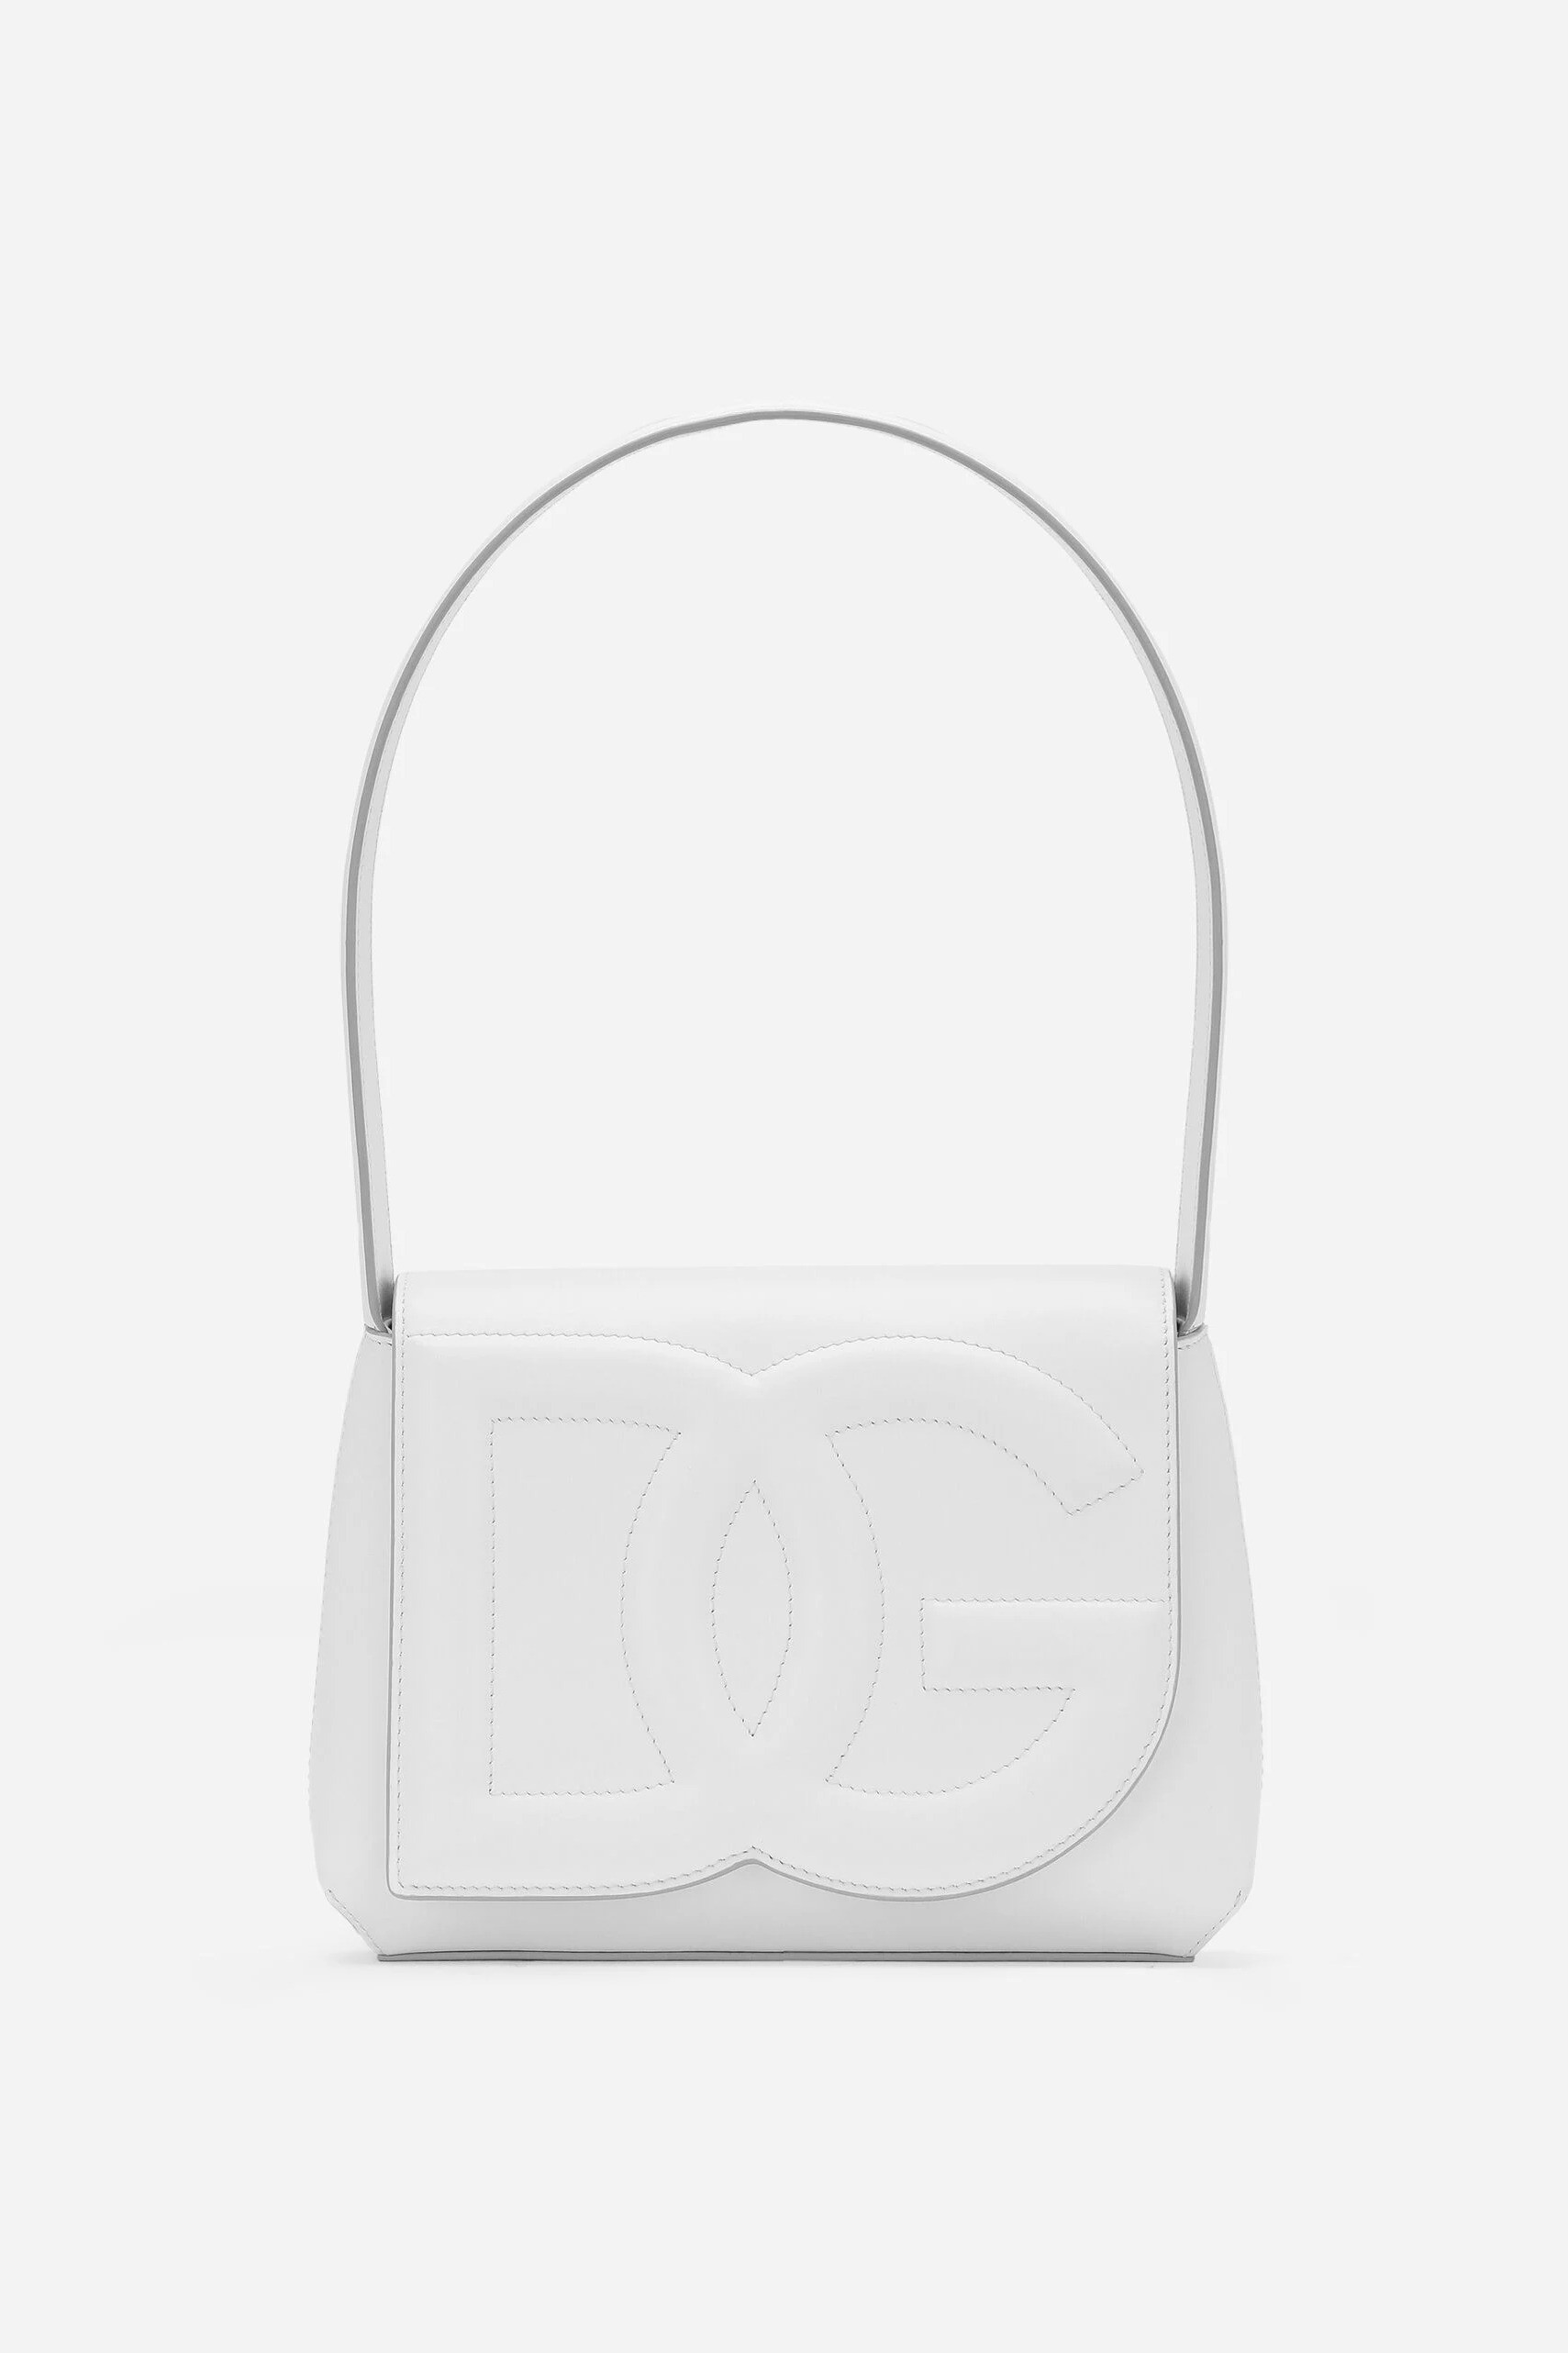 Dolce & Gabbana - DG LOGO BAG SHOULDER BAG - White